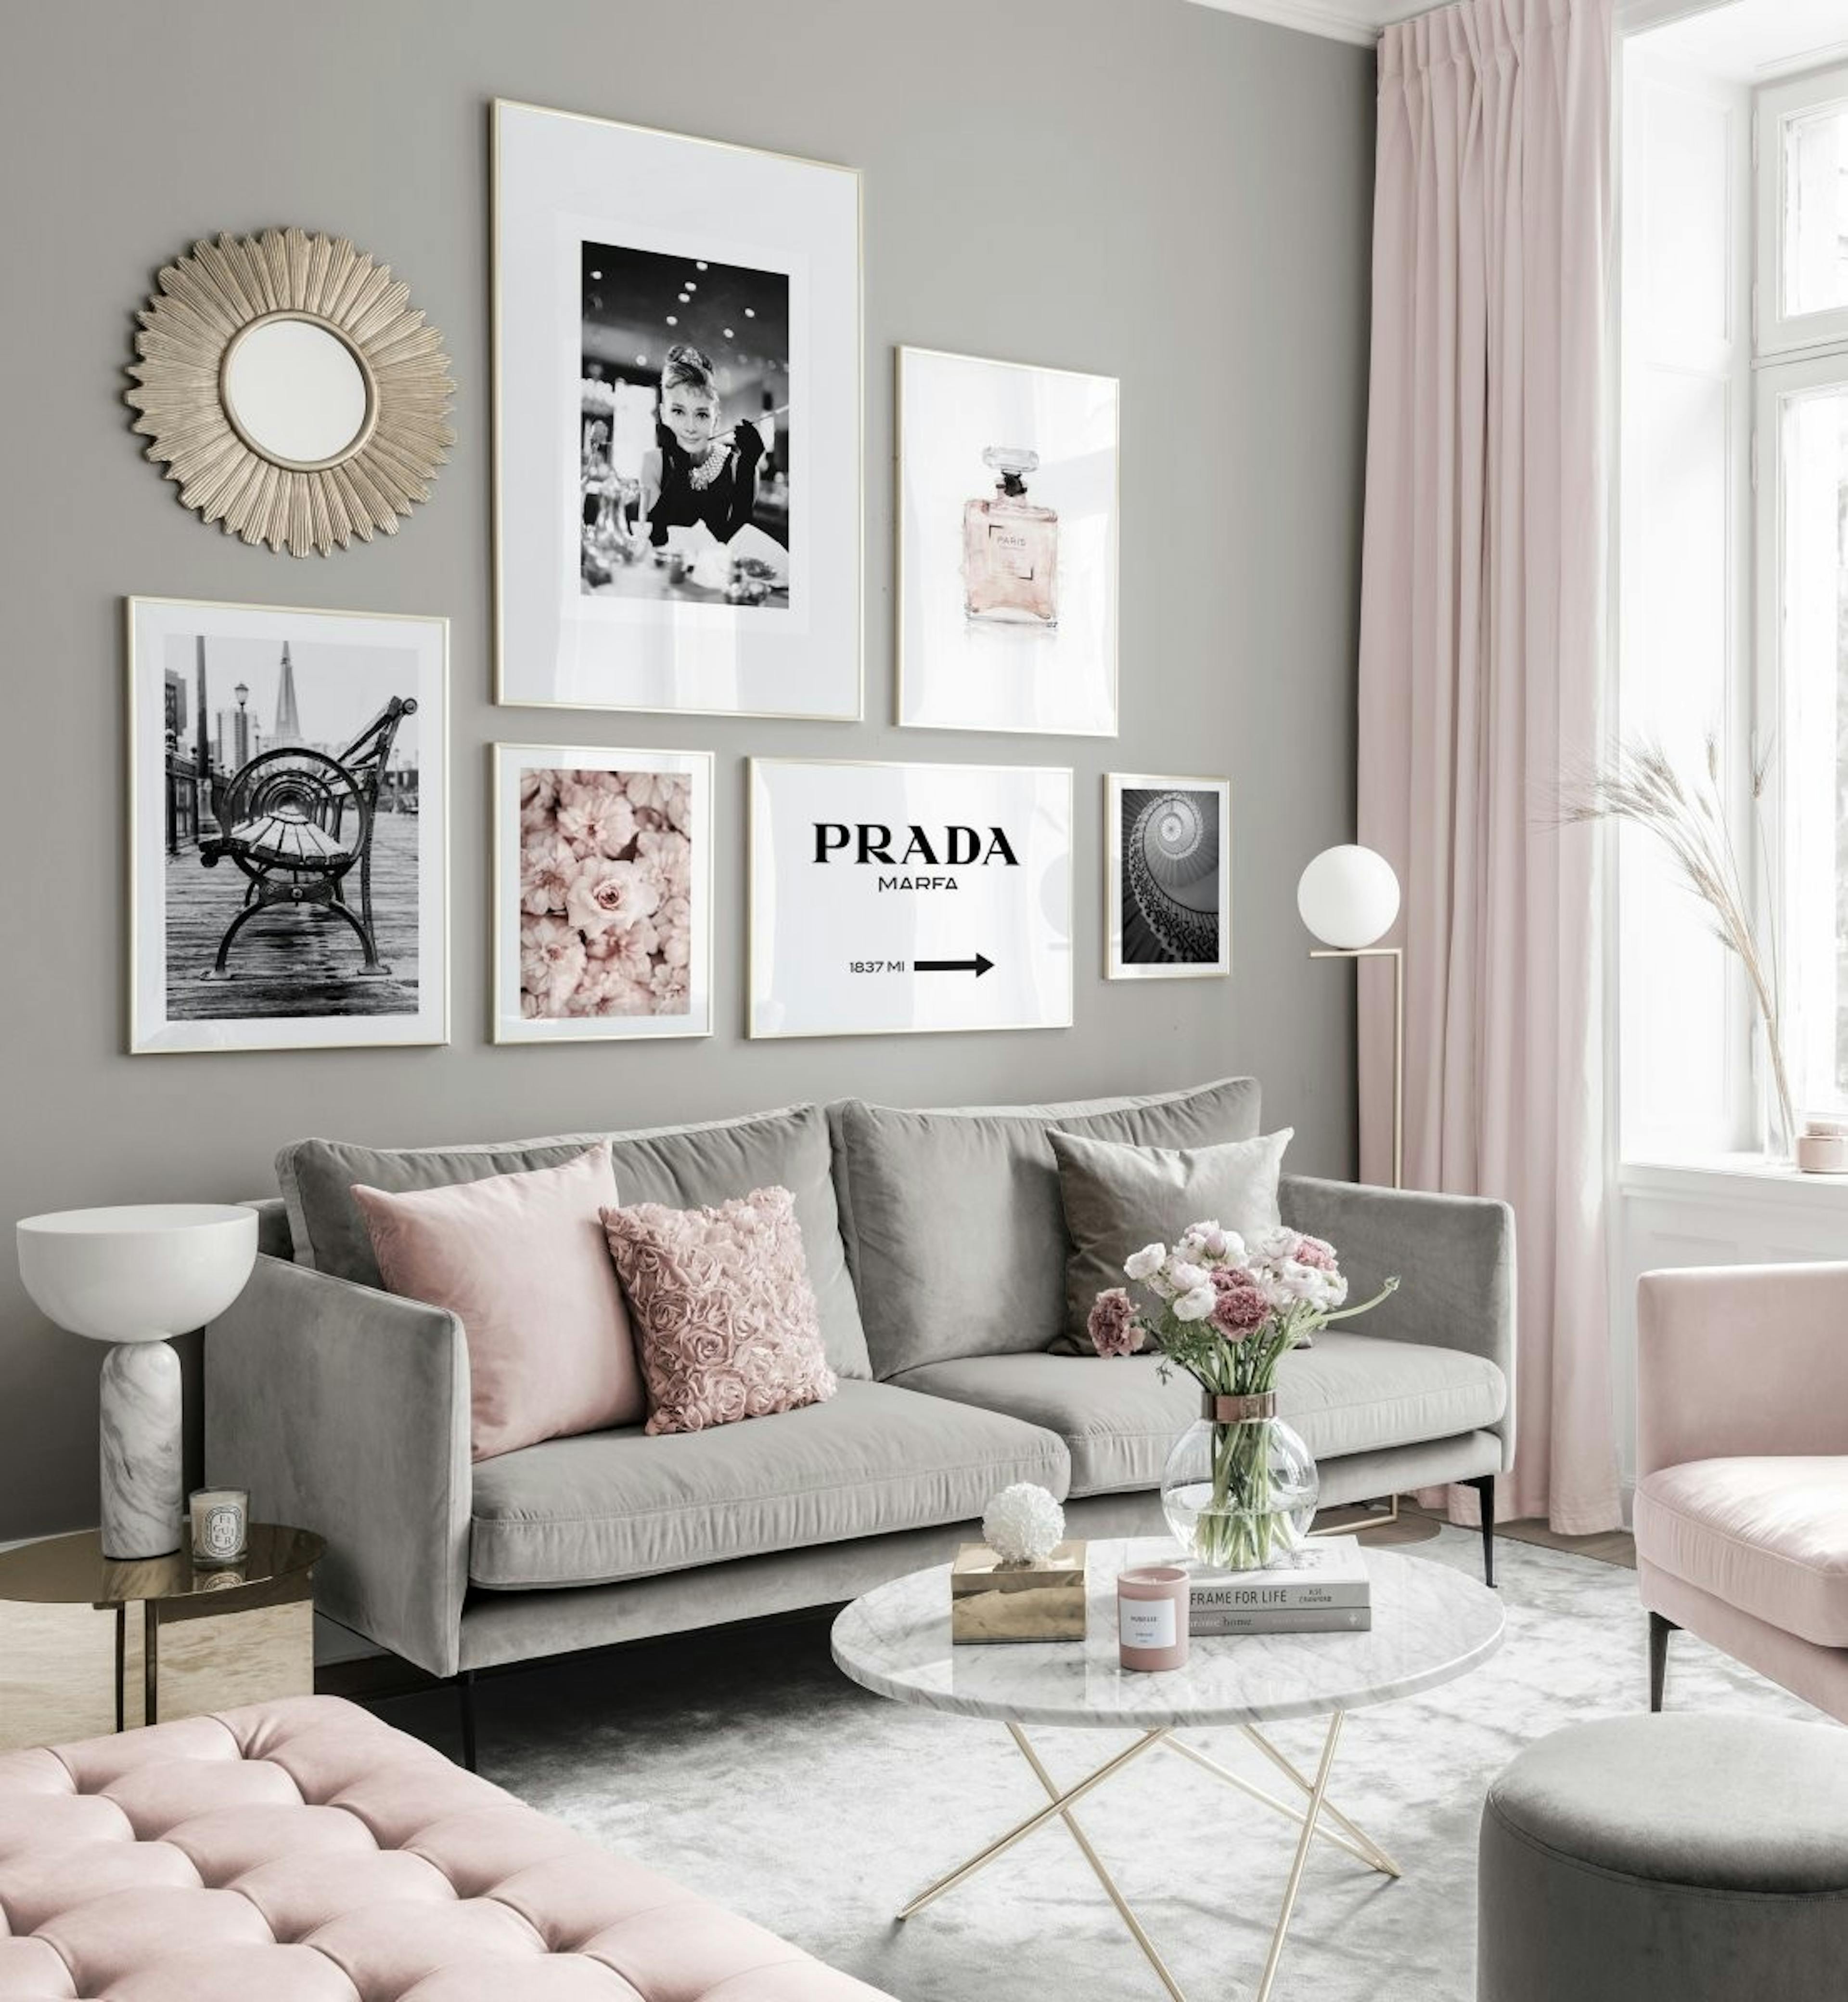 Divatos galéria fal fekete fehér poszterek rózsaszín tónusok arany keretben